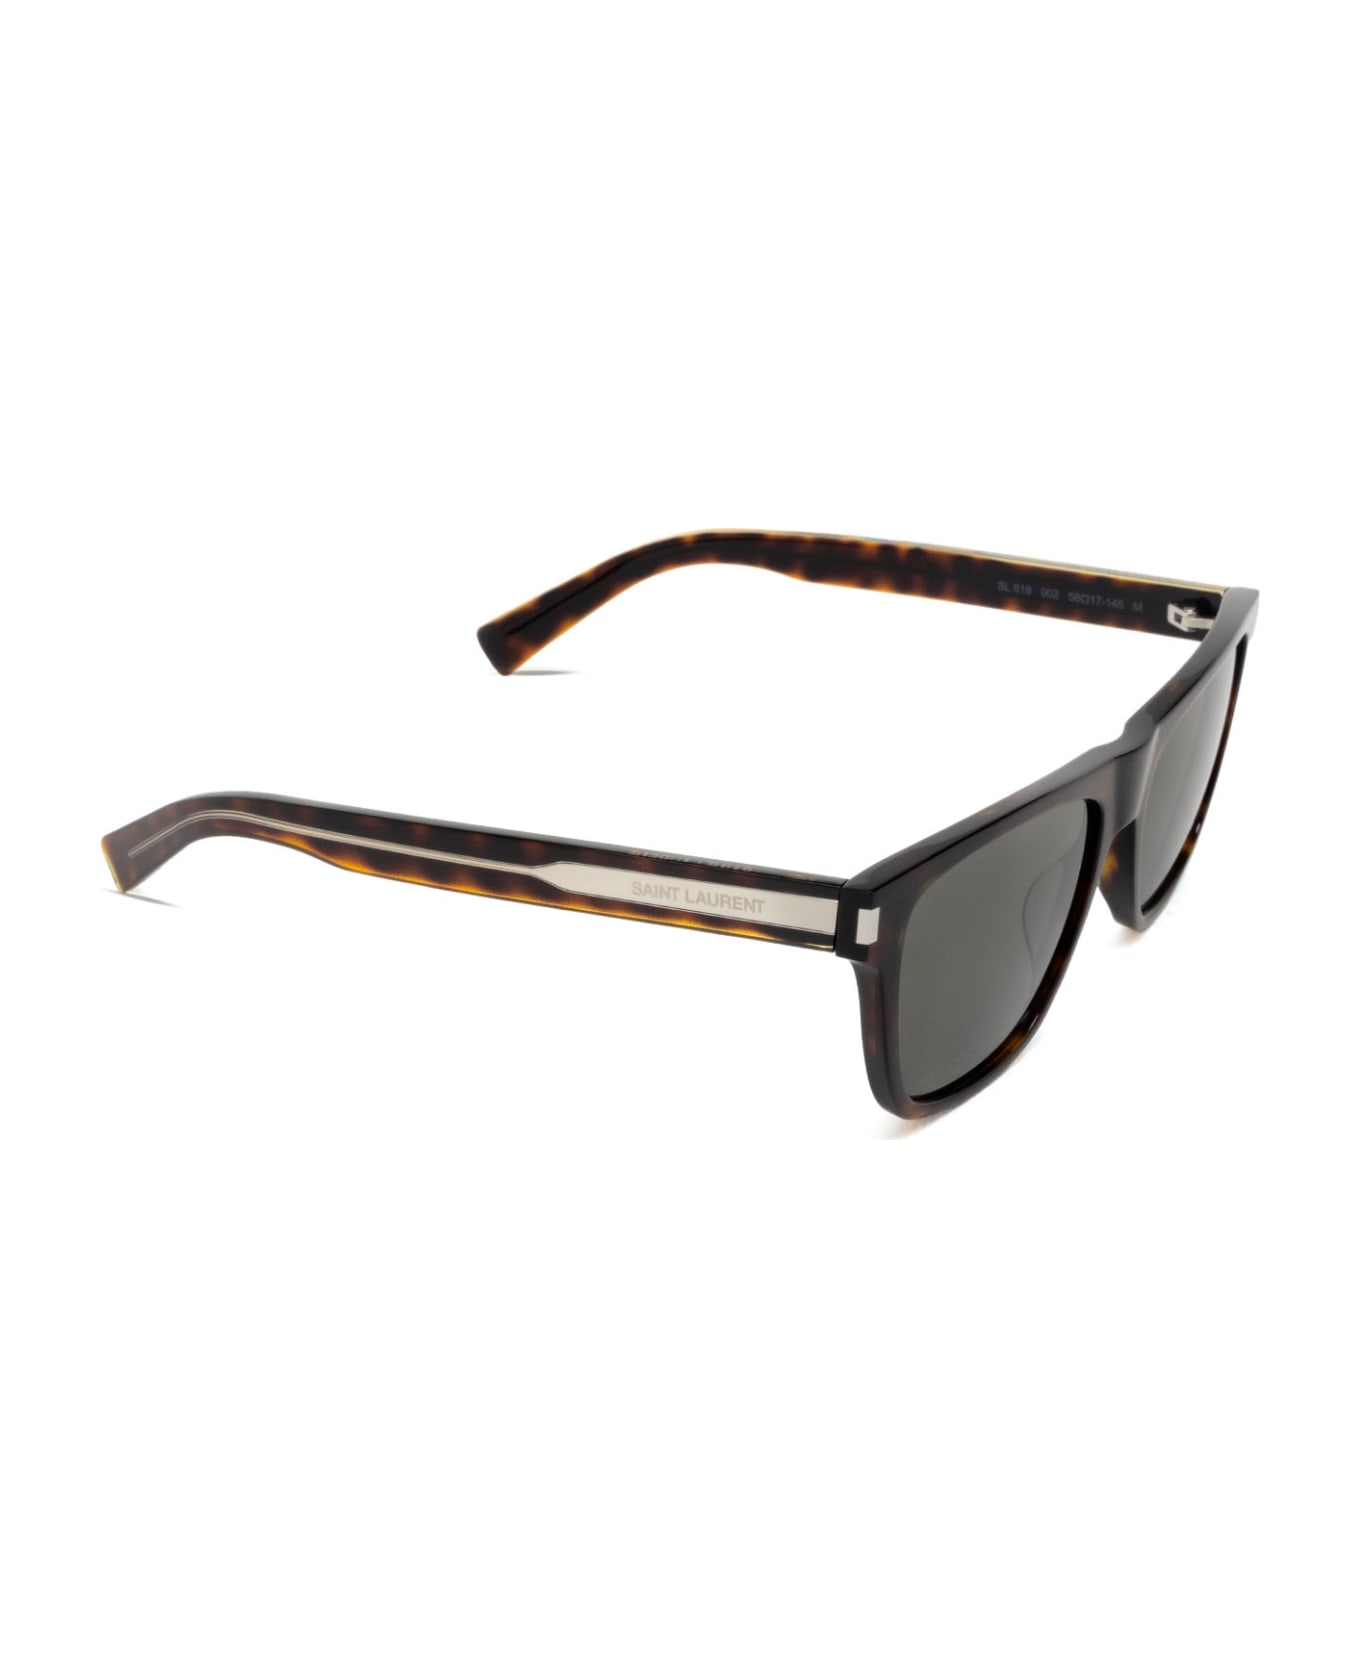 Saint Laurent Eyewear Sl 619 Havana Sunglasses - Havana